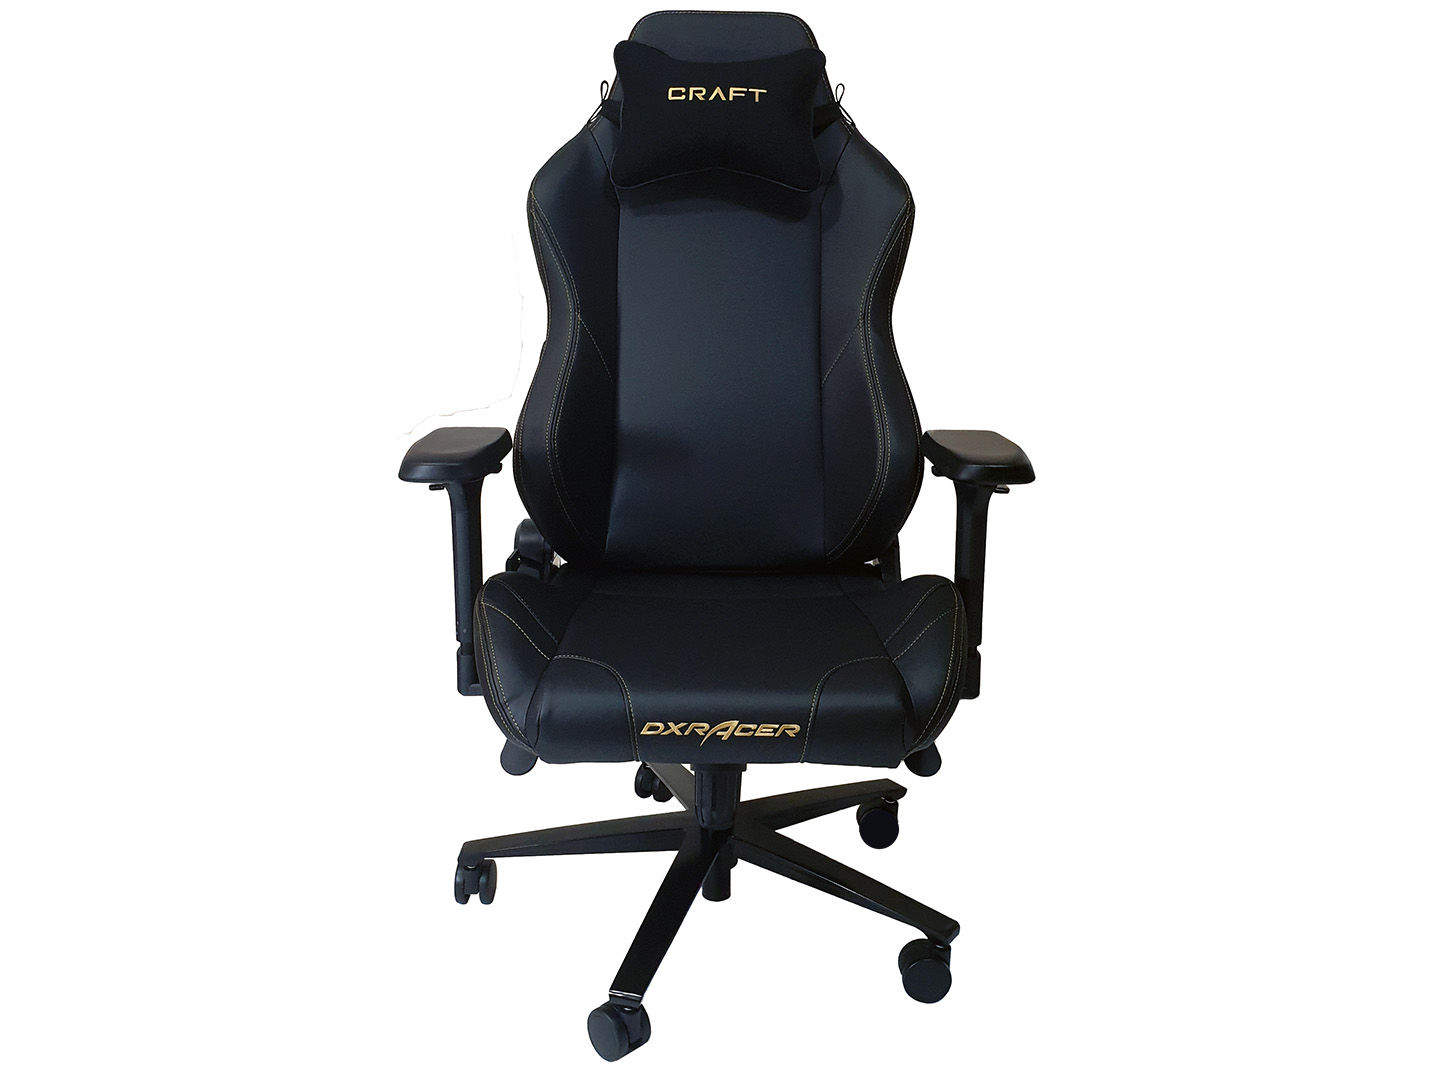 https://cdn.staticneo.com/a/dxracer-craft-racing-chair-classic/28.jpg